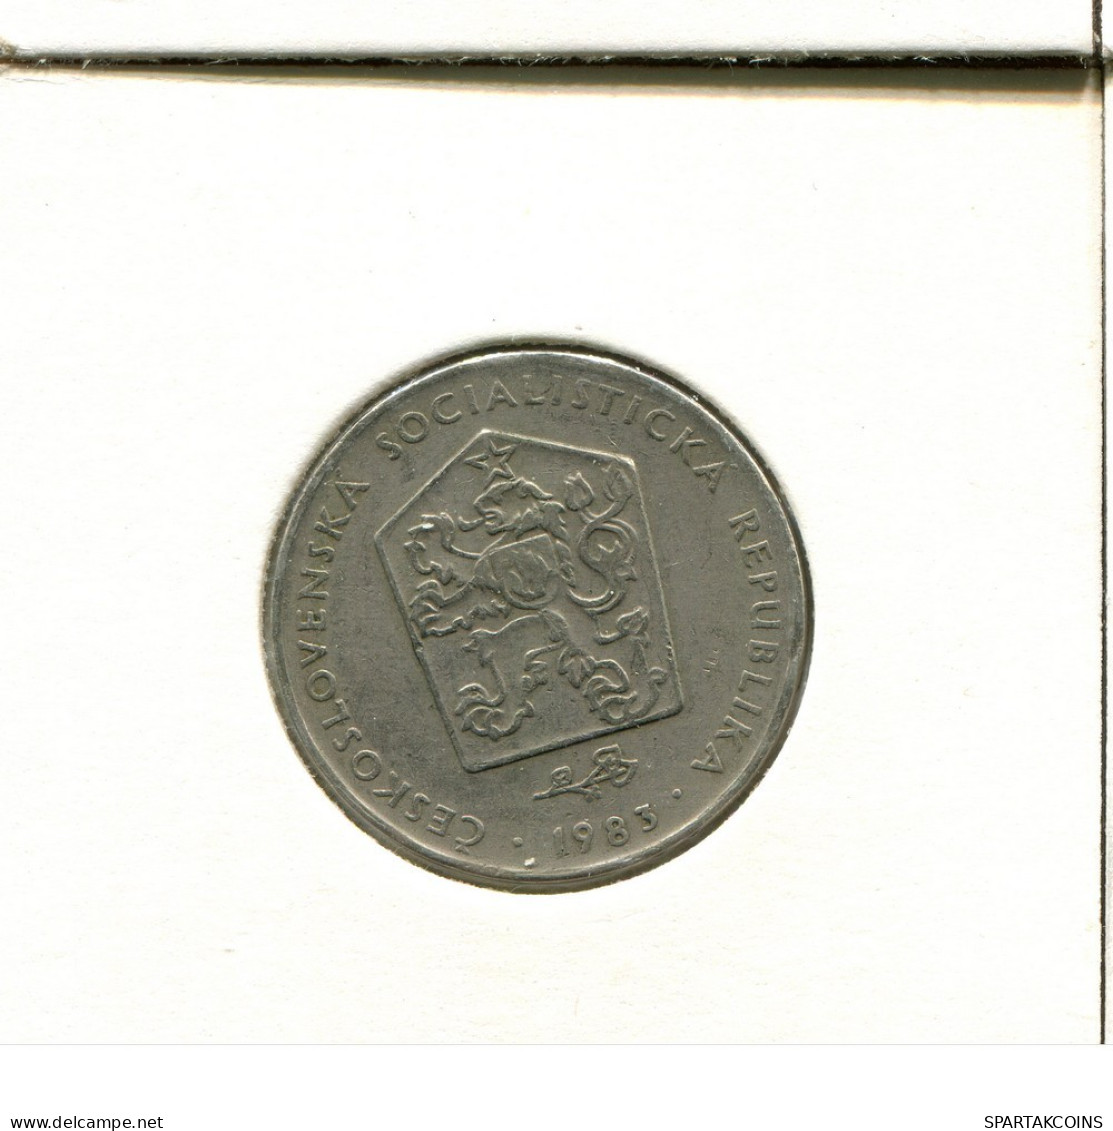 2 KORUN 1983 TSCHECHOSLOWAKEI CZECHOSLOWAKEI SLOVAKIA Münze #AS979.D.A - Tchécoslovaquie